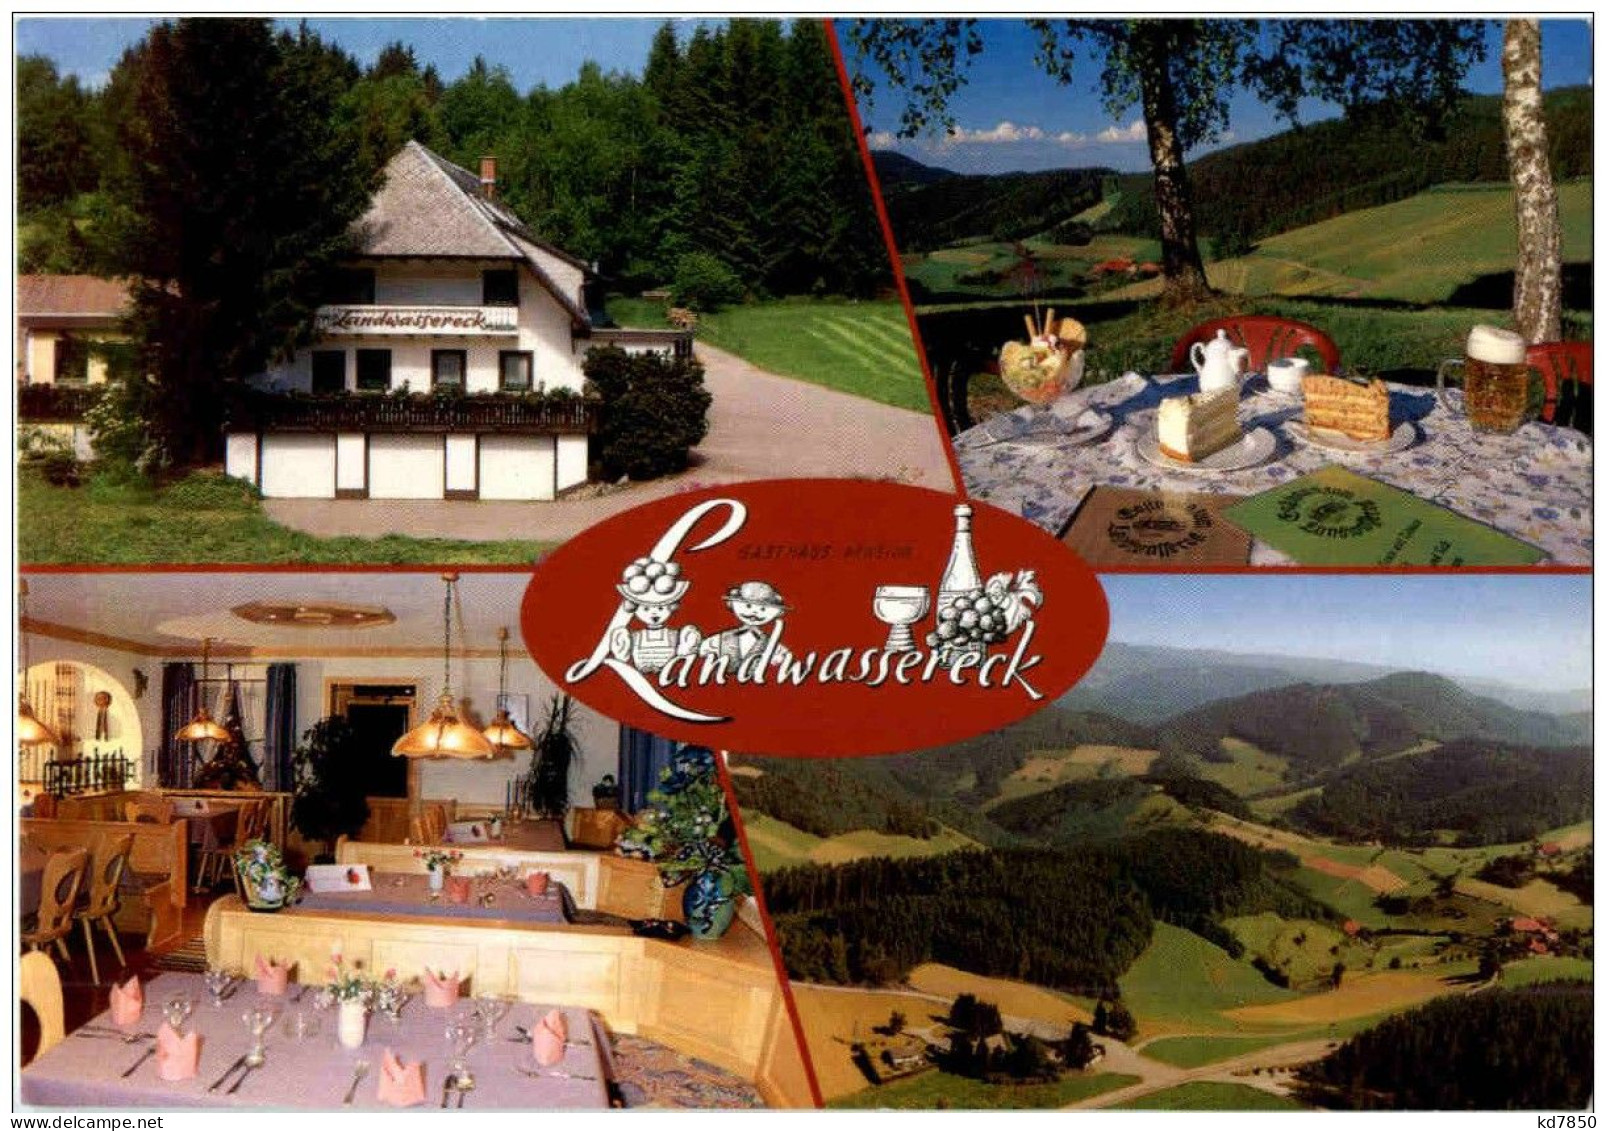 Elzach Oberprechtal - Gasthaus Zum Landwassereck - Elzach